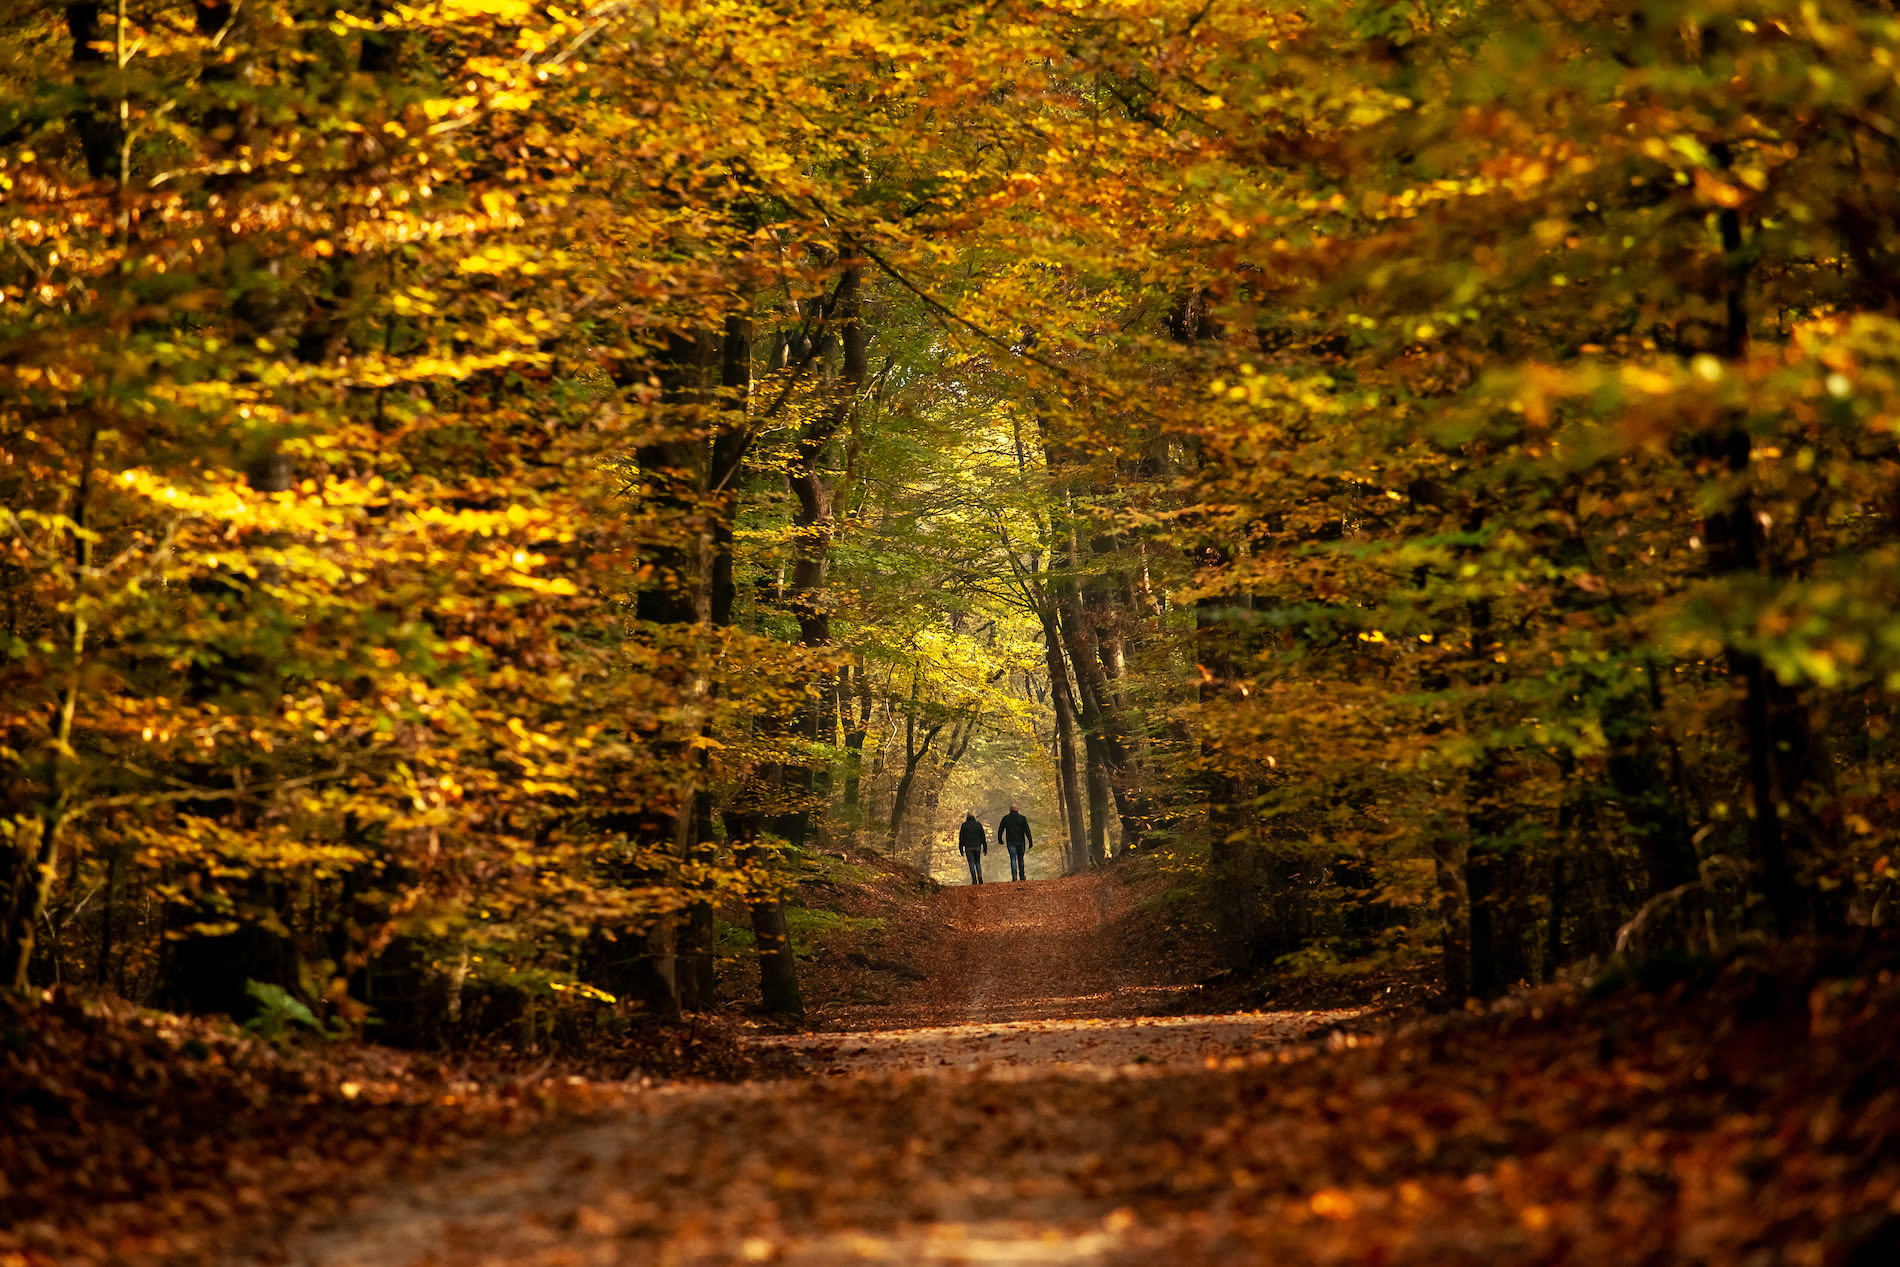 Wandelen in bos met herfstkleuren. Foto: Adobe Stock / fotografiecor